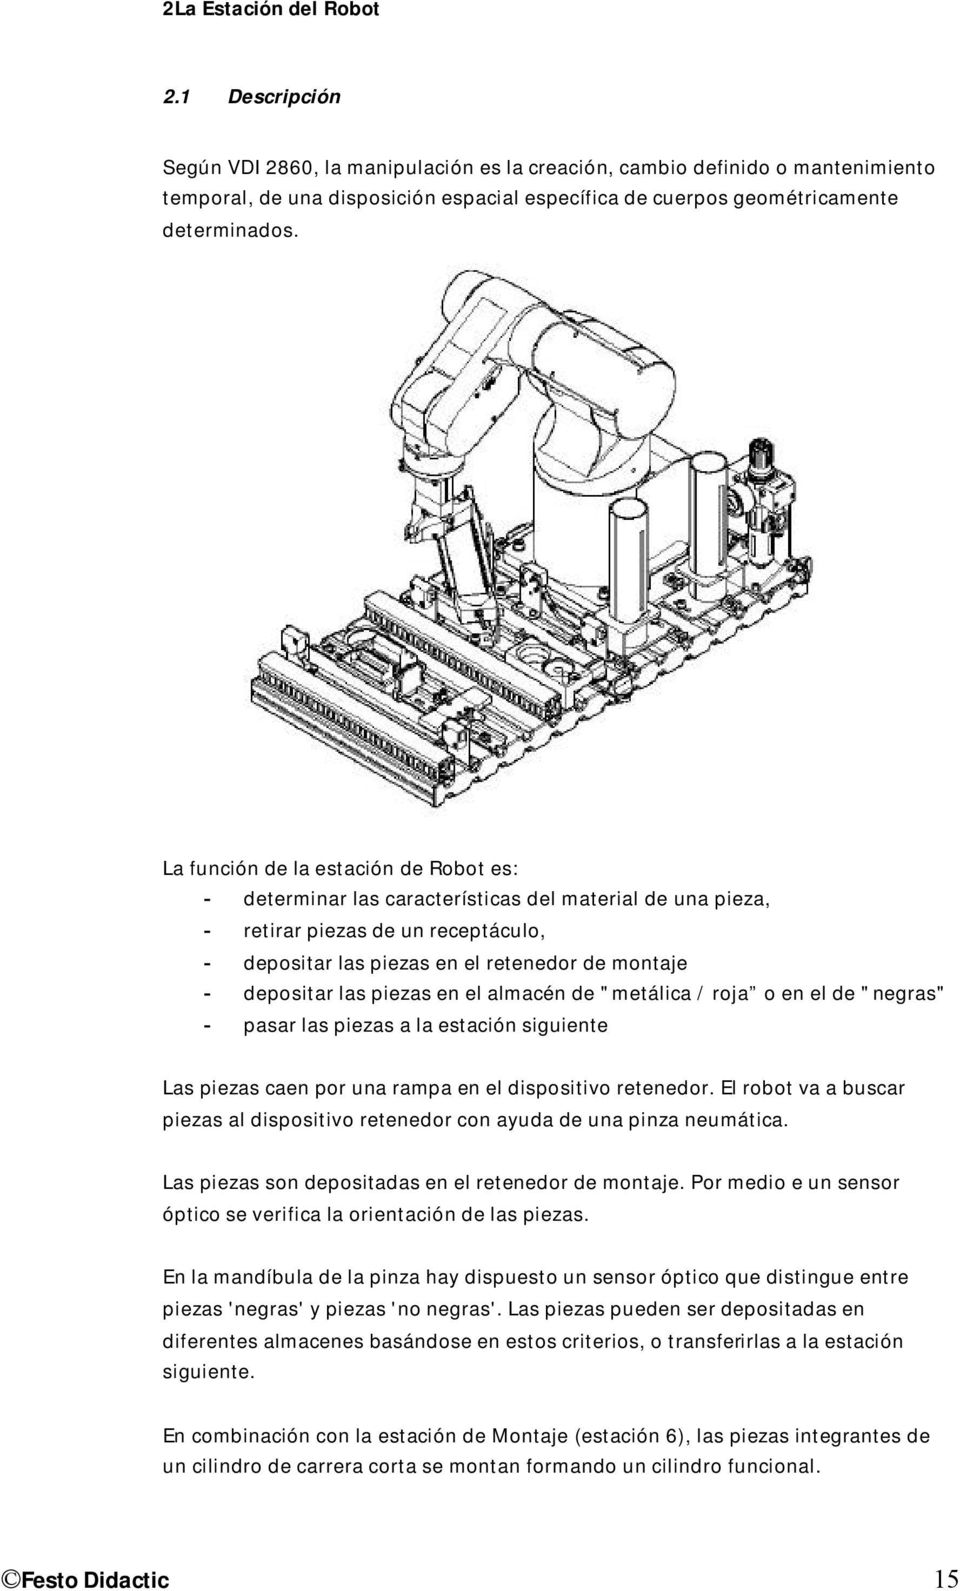 La función de la estación de Robot es: - determinar las características del material de una pieza, - retirar piezas de un receptáculo, - depositar las piezas en el retenedor de montaje - depositar